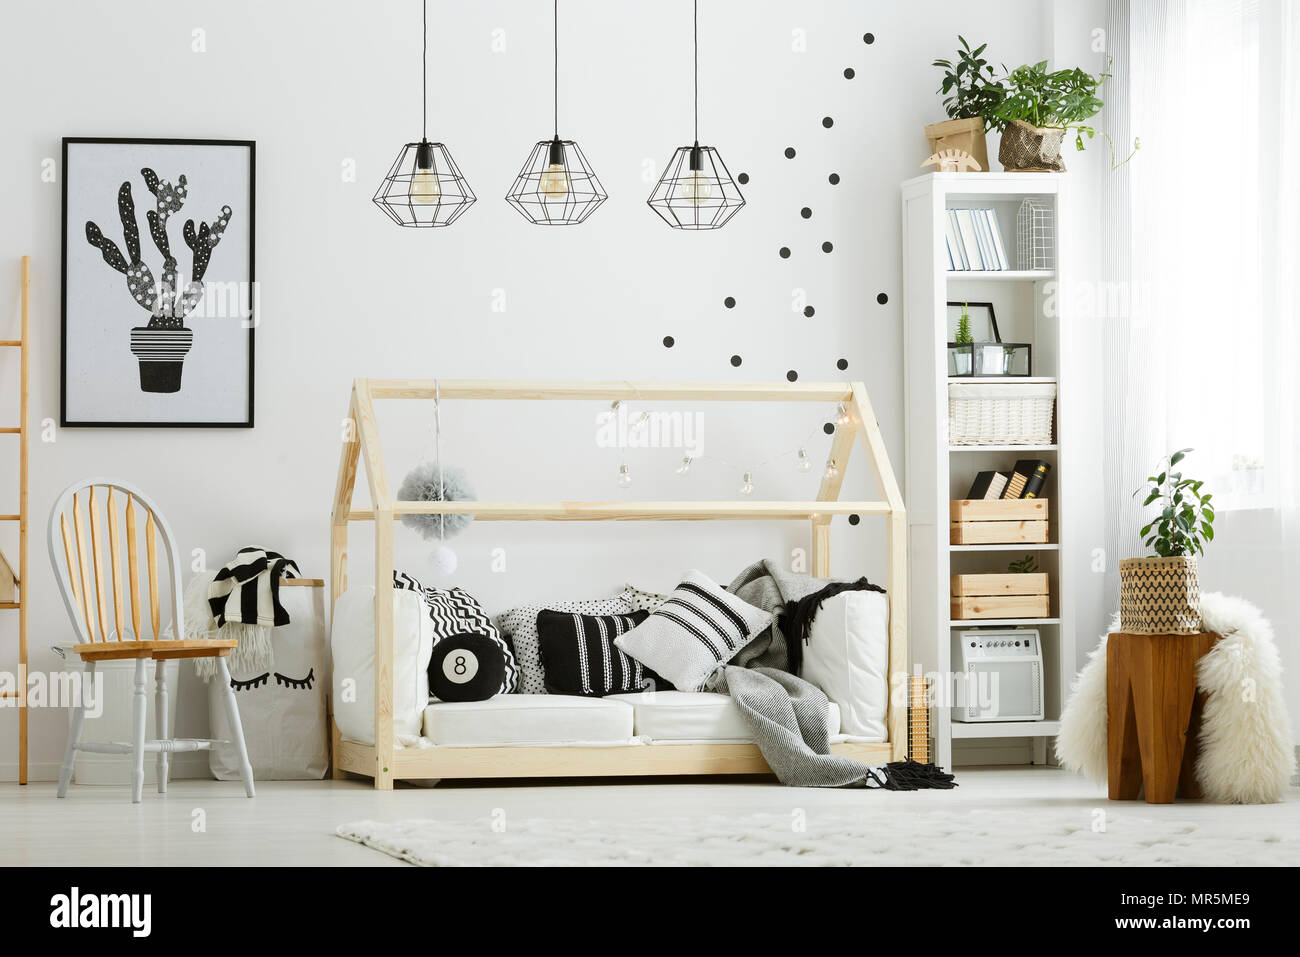 Chambre à coucher bébé dans un style scandinave avec lit et chaise en bois Banque D'Images